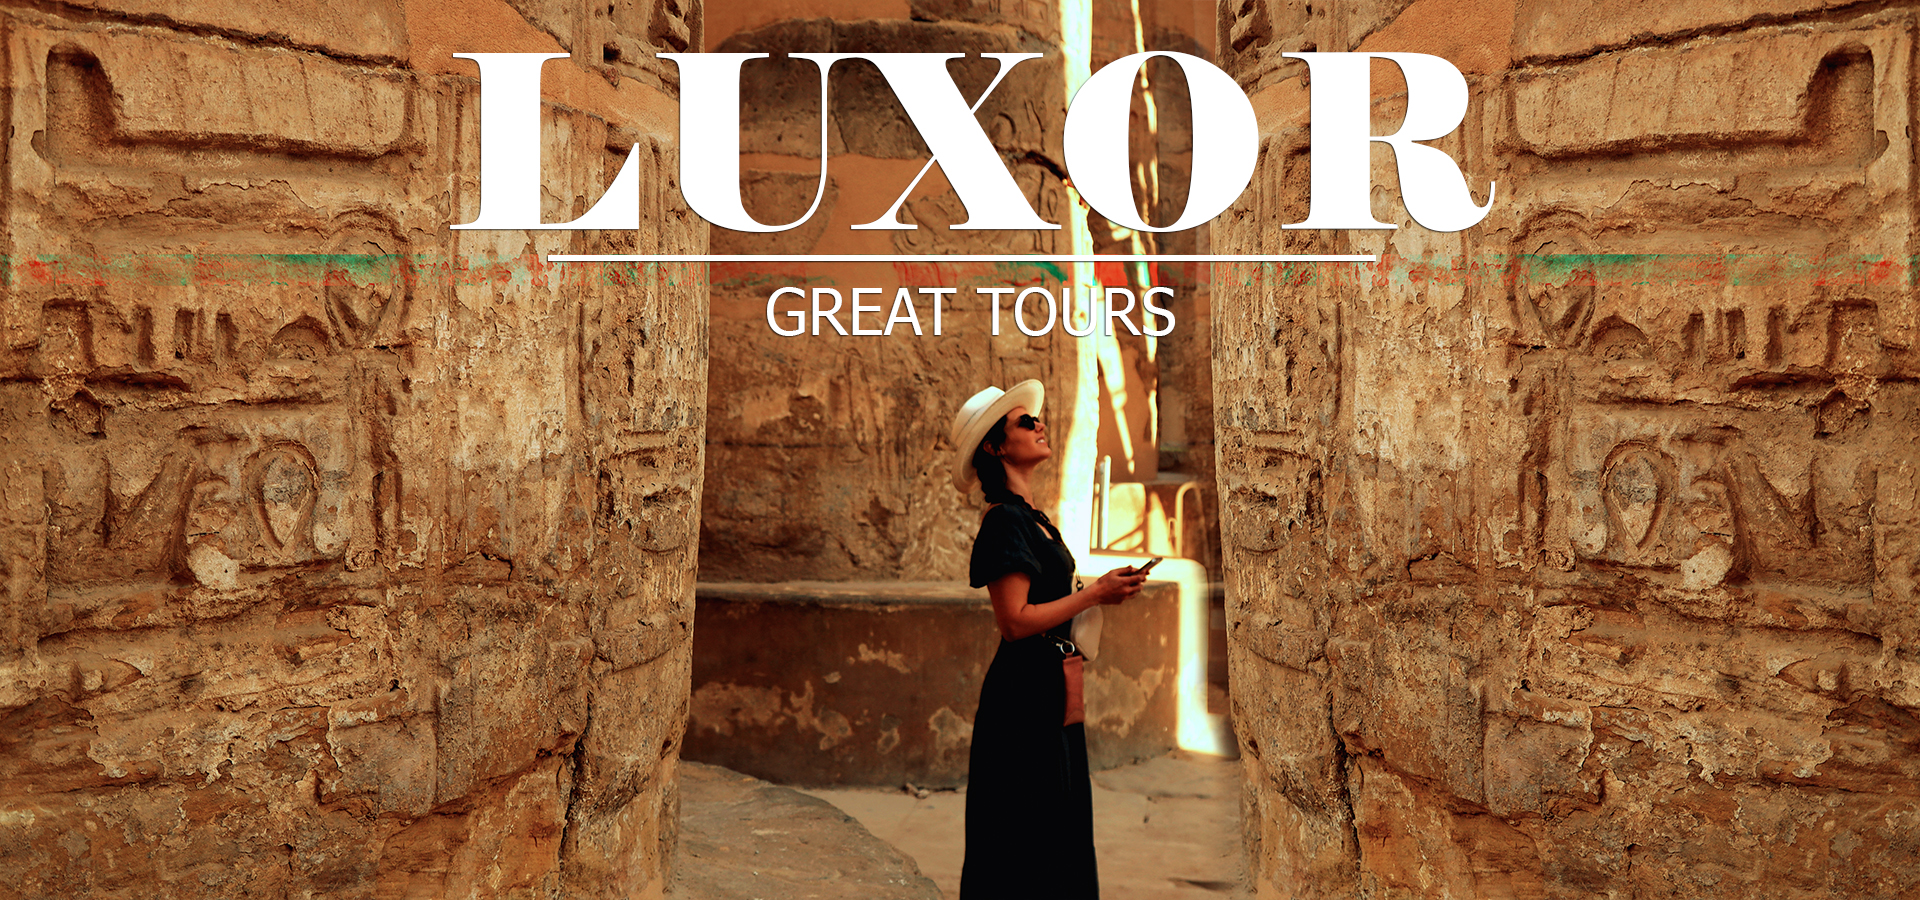 Luxor Tours - Kemet Travel